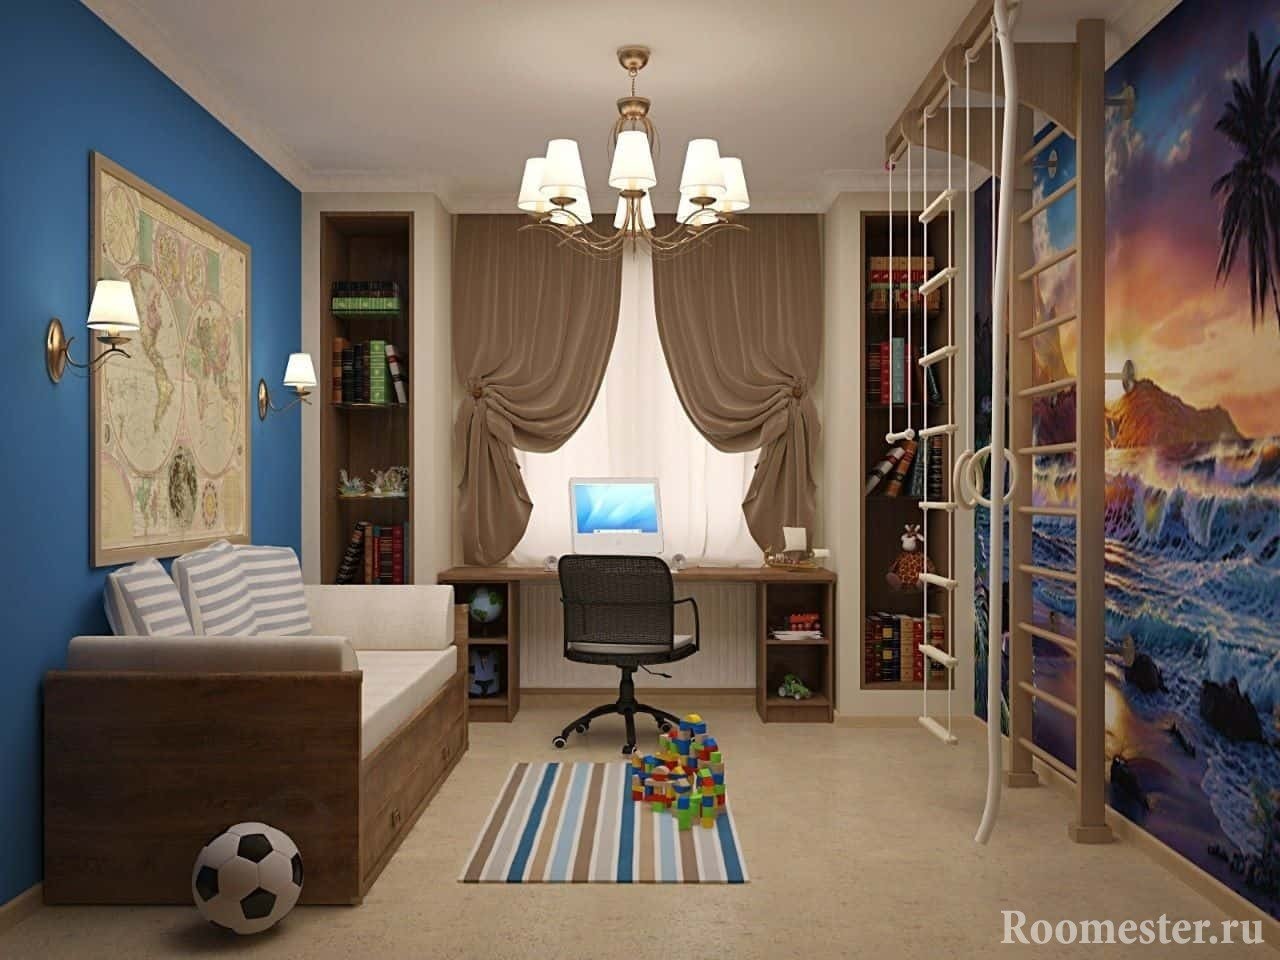 Детская комната в хрущевке для мальчика с спортивной зоной